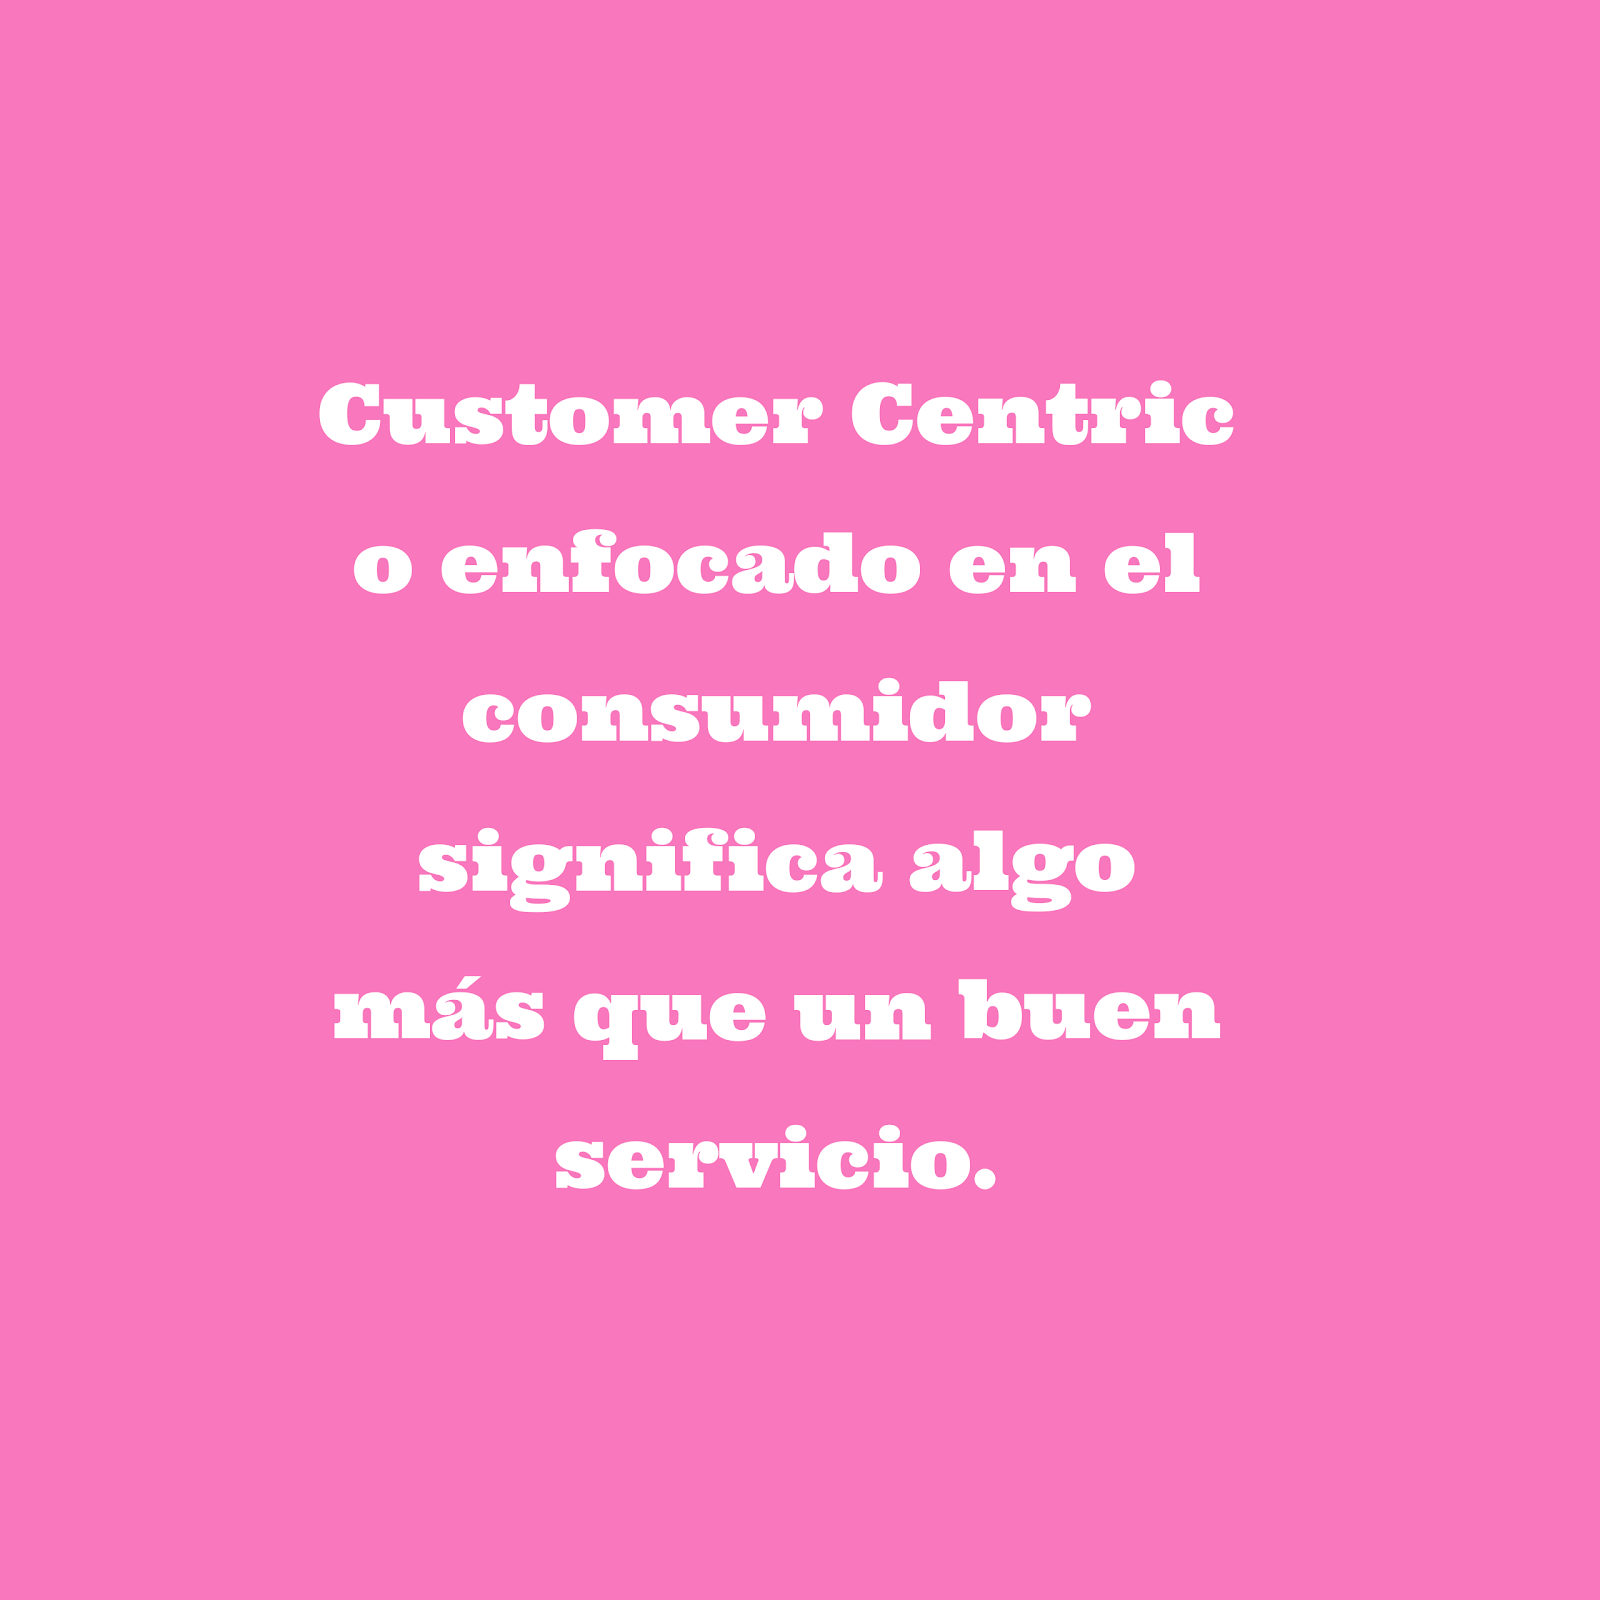 Customer centric, enfocado en el consumidor y servicio al cliente.